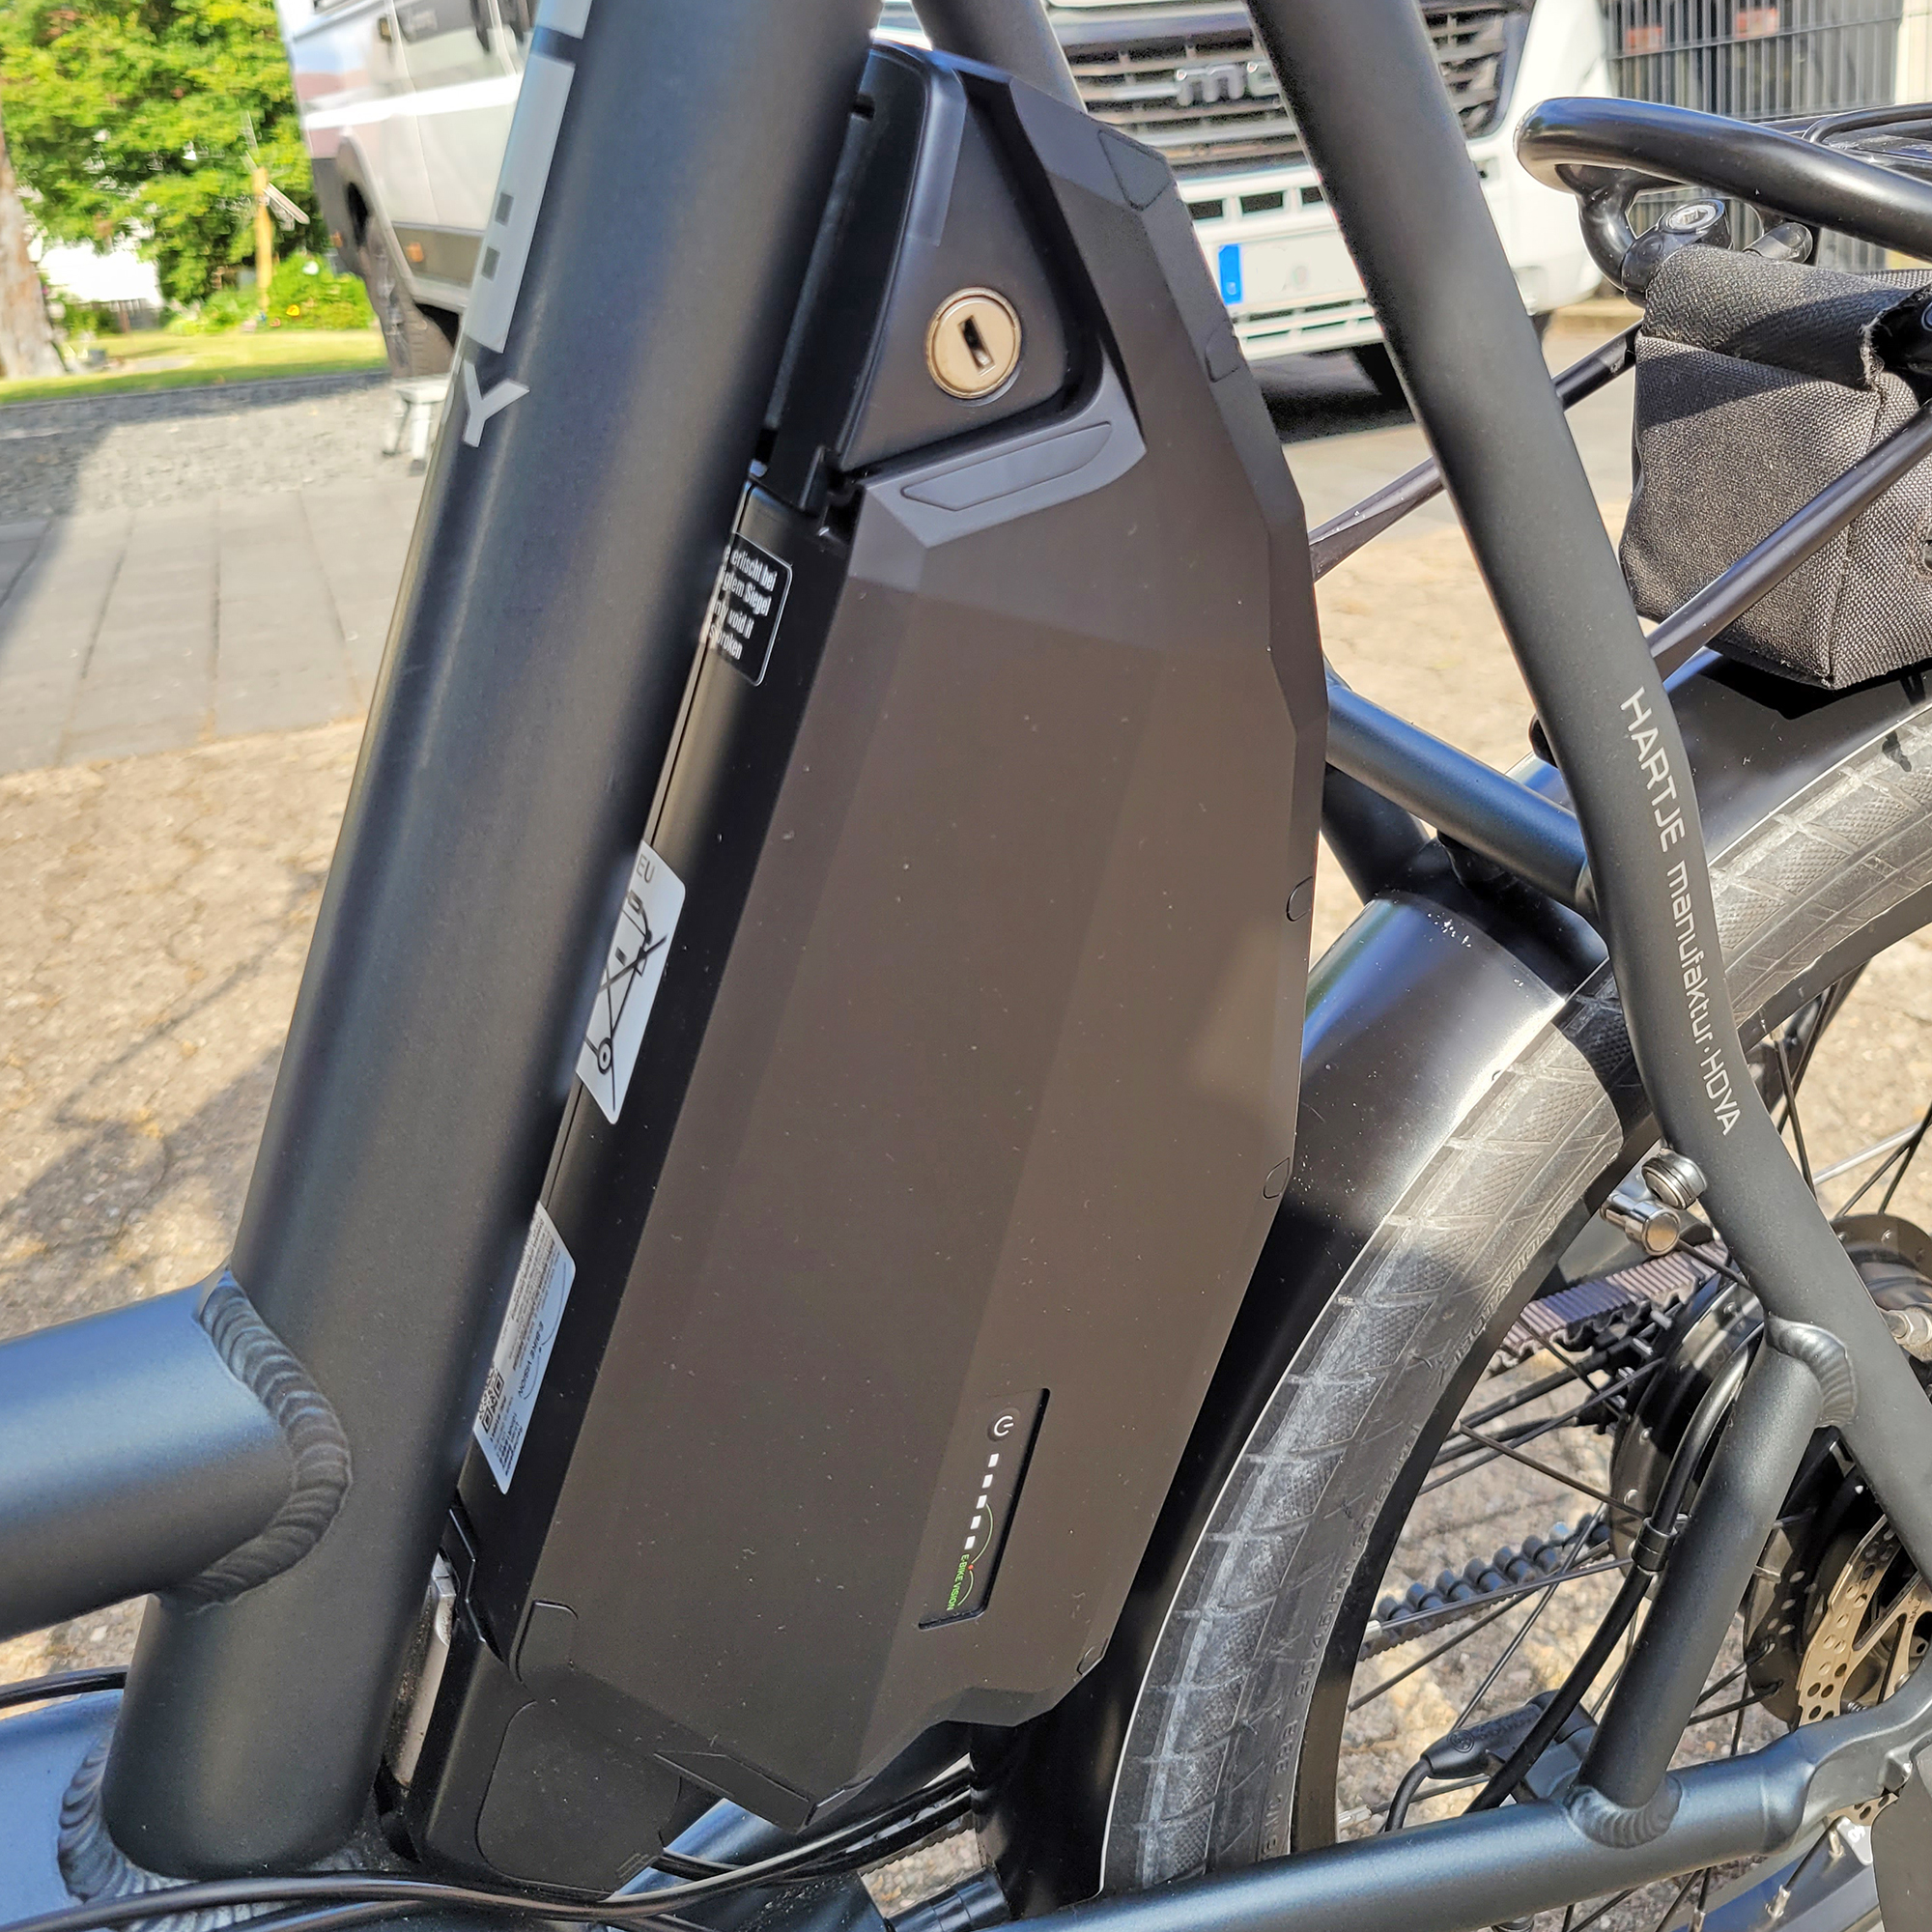 Akku passend für das e-Bike i:SY XXL 720Wh 36V 20Ah, Sattelrohr, Made in Germany